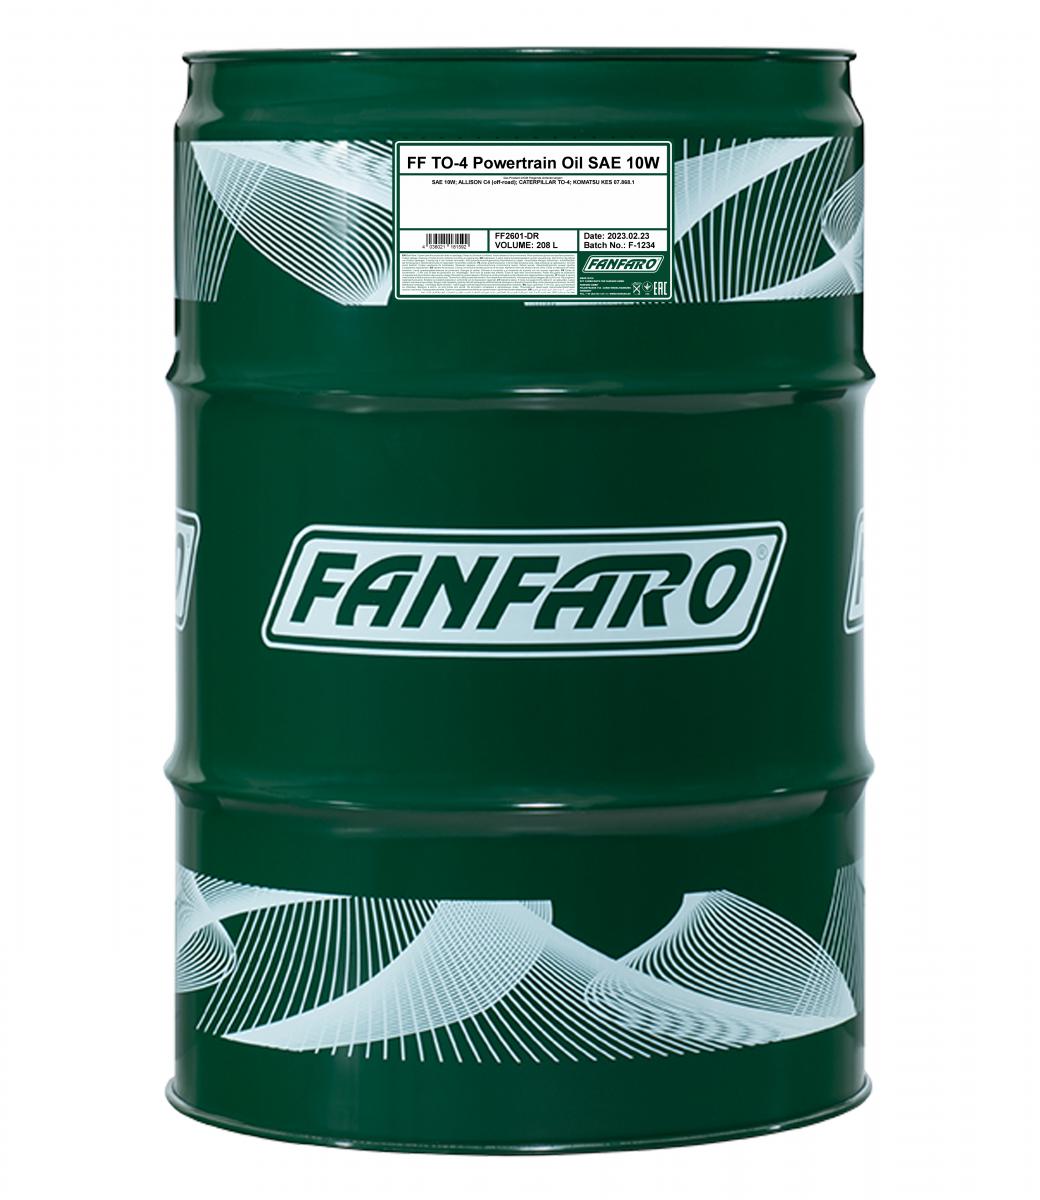 FANFARO TO-4 POWERTRAIN OIL SAE 10W